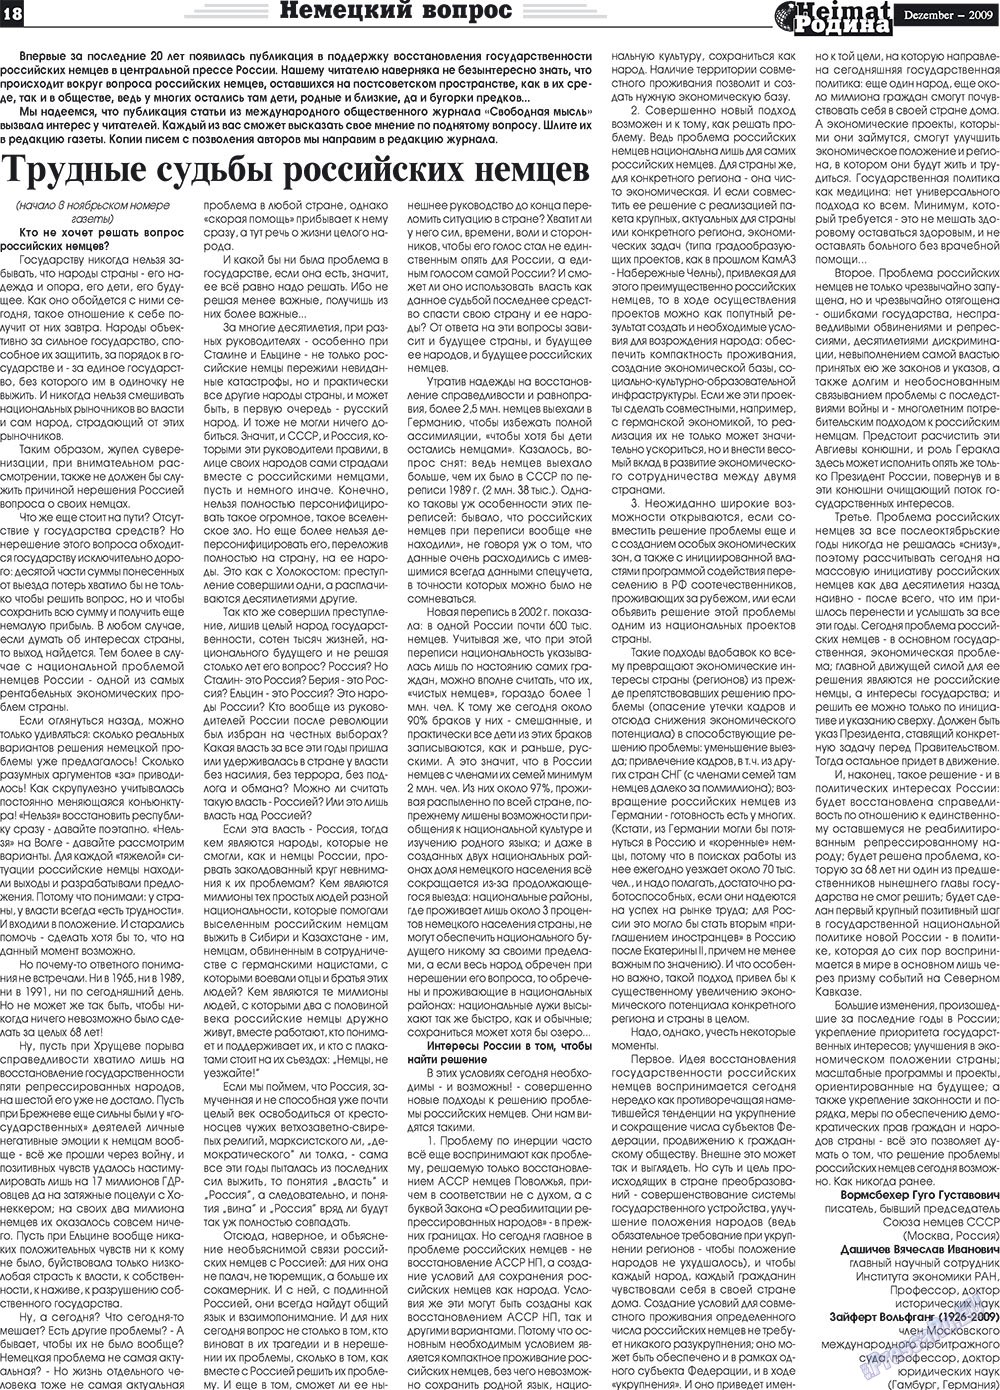 Heimat-Родина (газета). 2009 год, номер 12, стр. 18